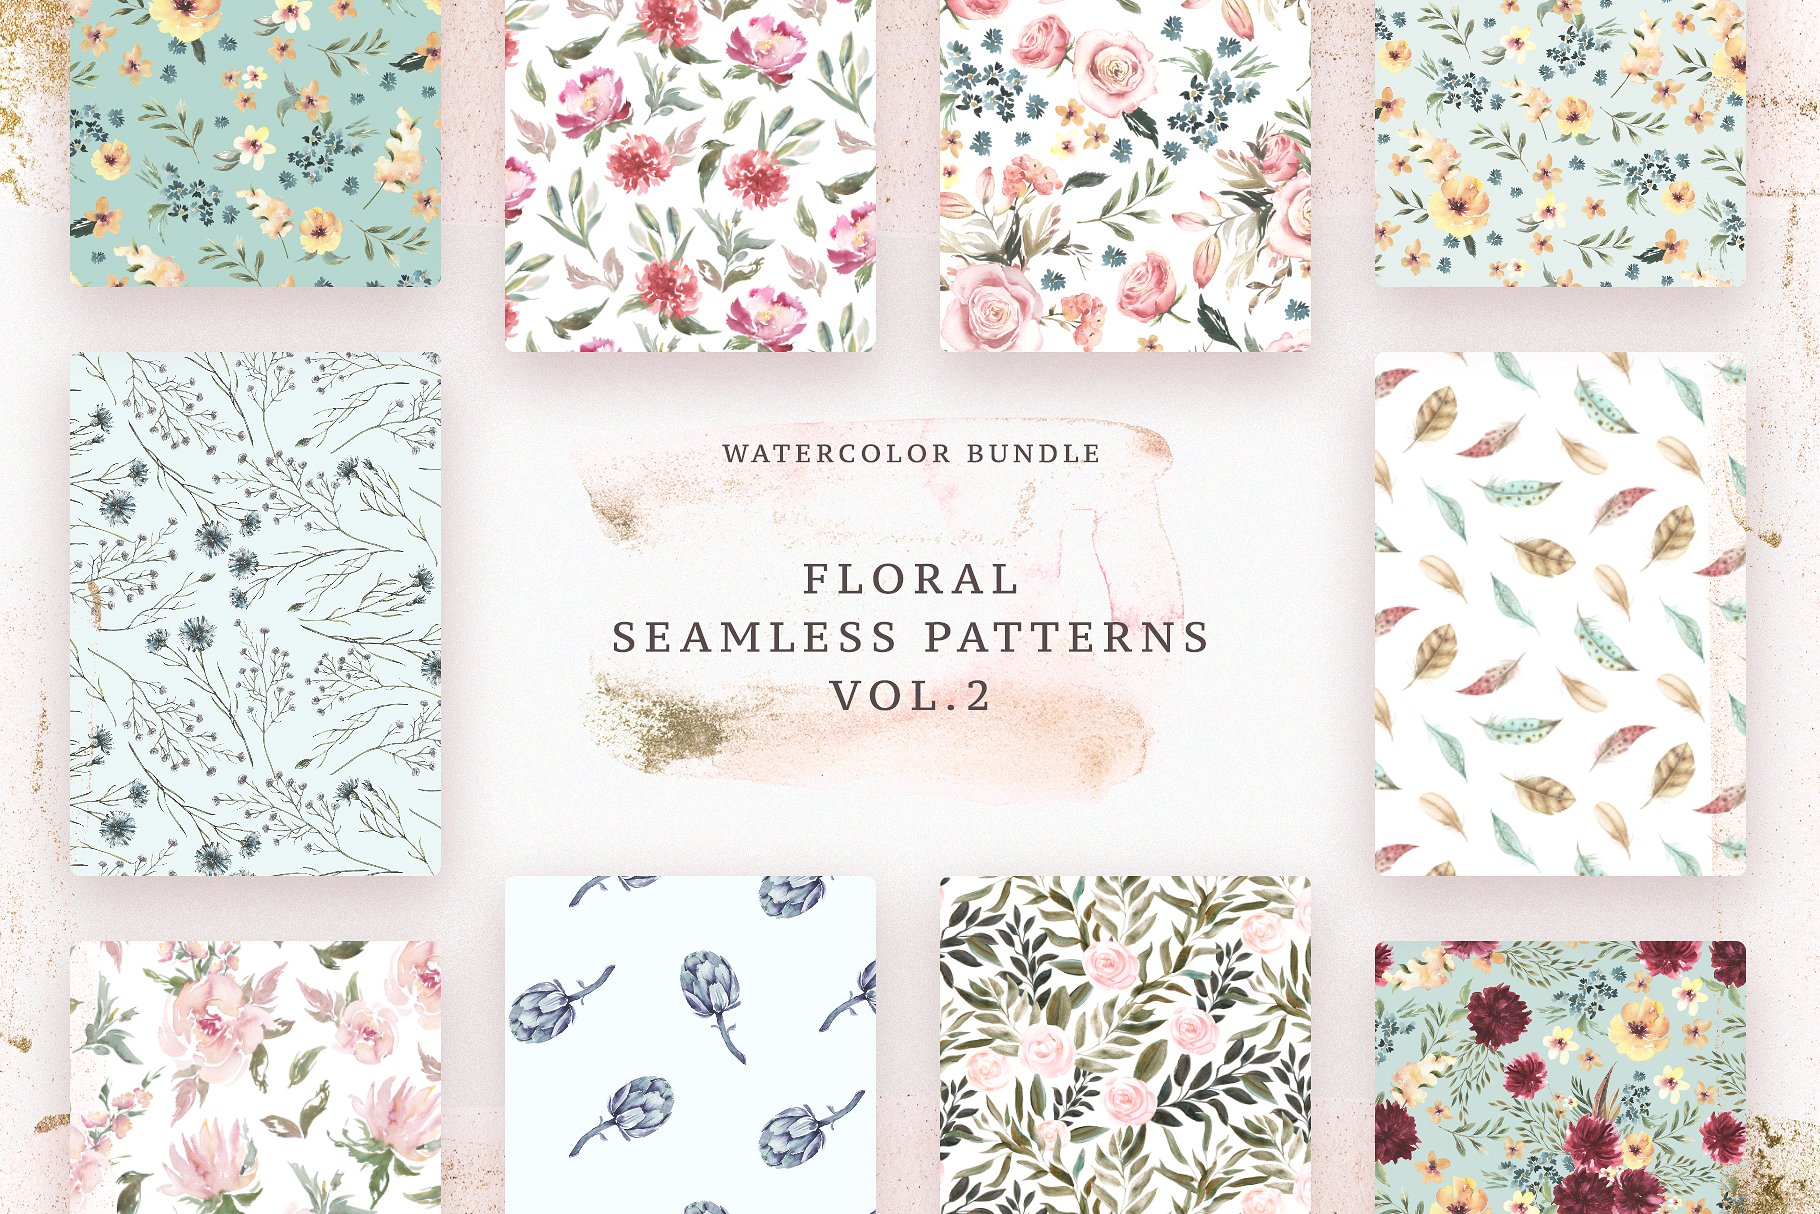 极力推荐：花卉图案纹理集合 Floral Patterns Bundle Vol.2 [3.45GB, 超过120款图案]插图